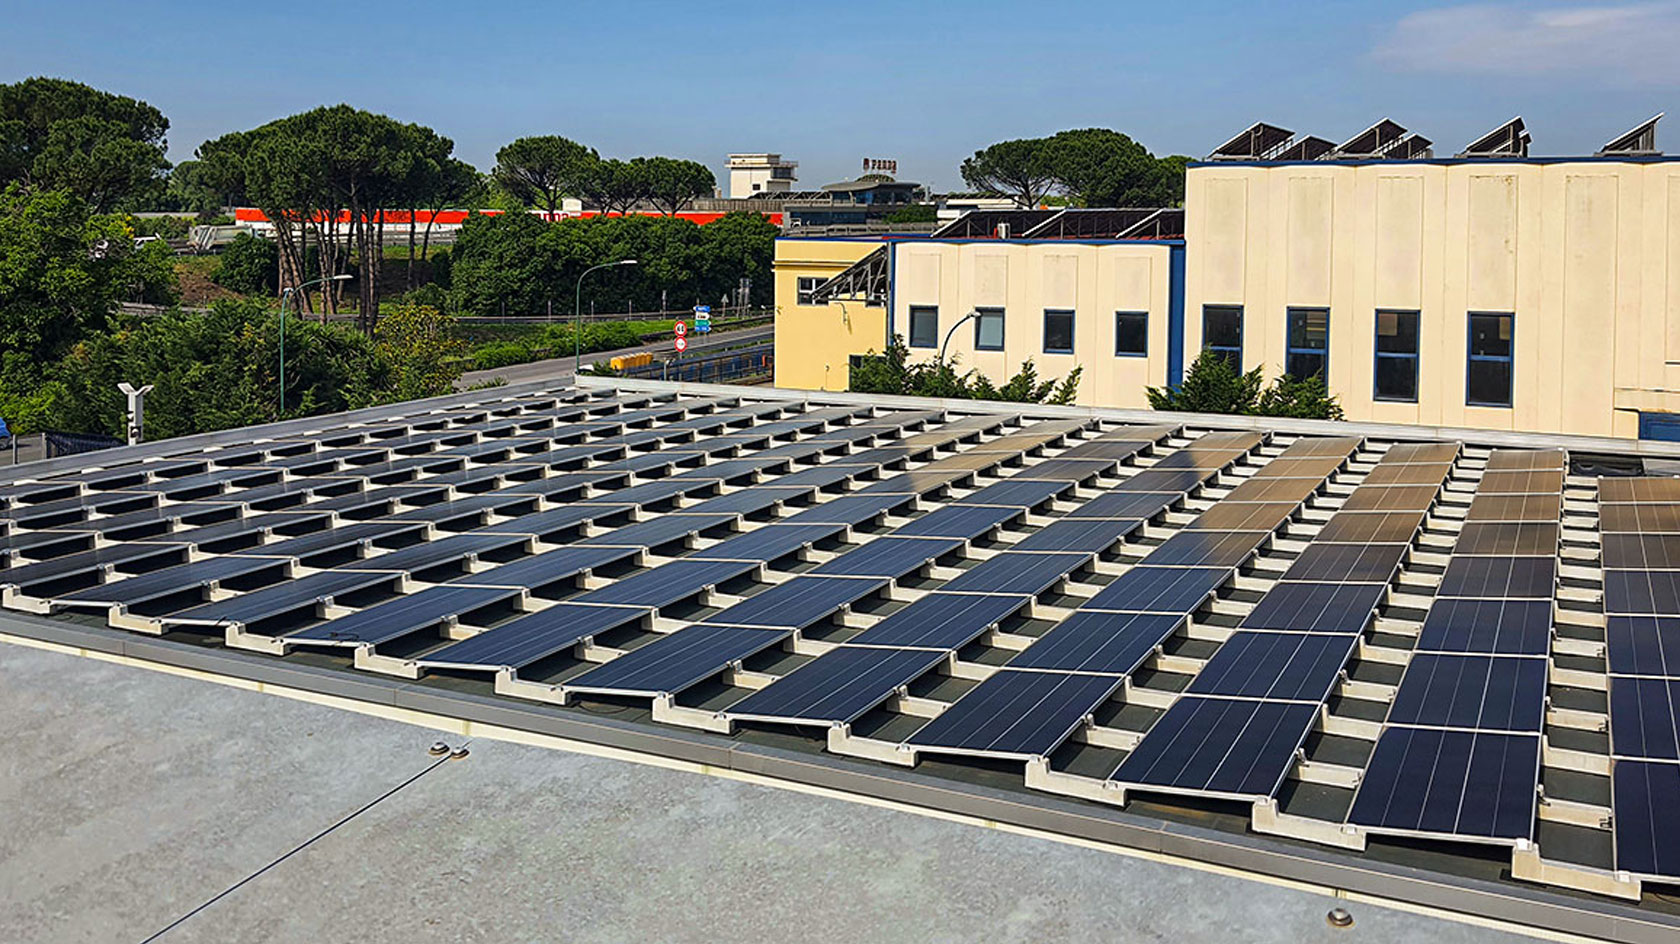 Impianto Fotovoltaico SunPower da 54,4 kWp installato a Nola, Napoli dall'azienda DMT Solar installatore certificato Tesla Powerwall e Sunpower Maxeon impianto fotovoltaico in Campania, Lazio, Molise, Lombardia, Piemonte, ITALIA